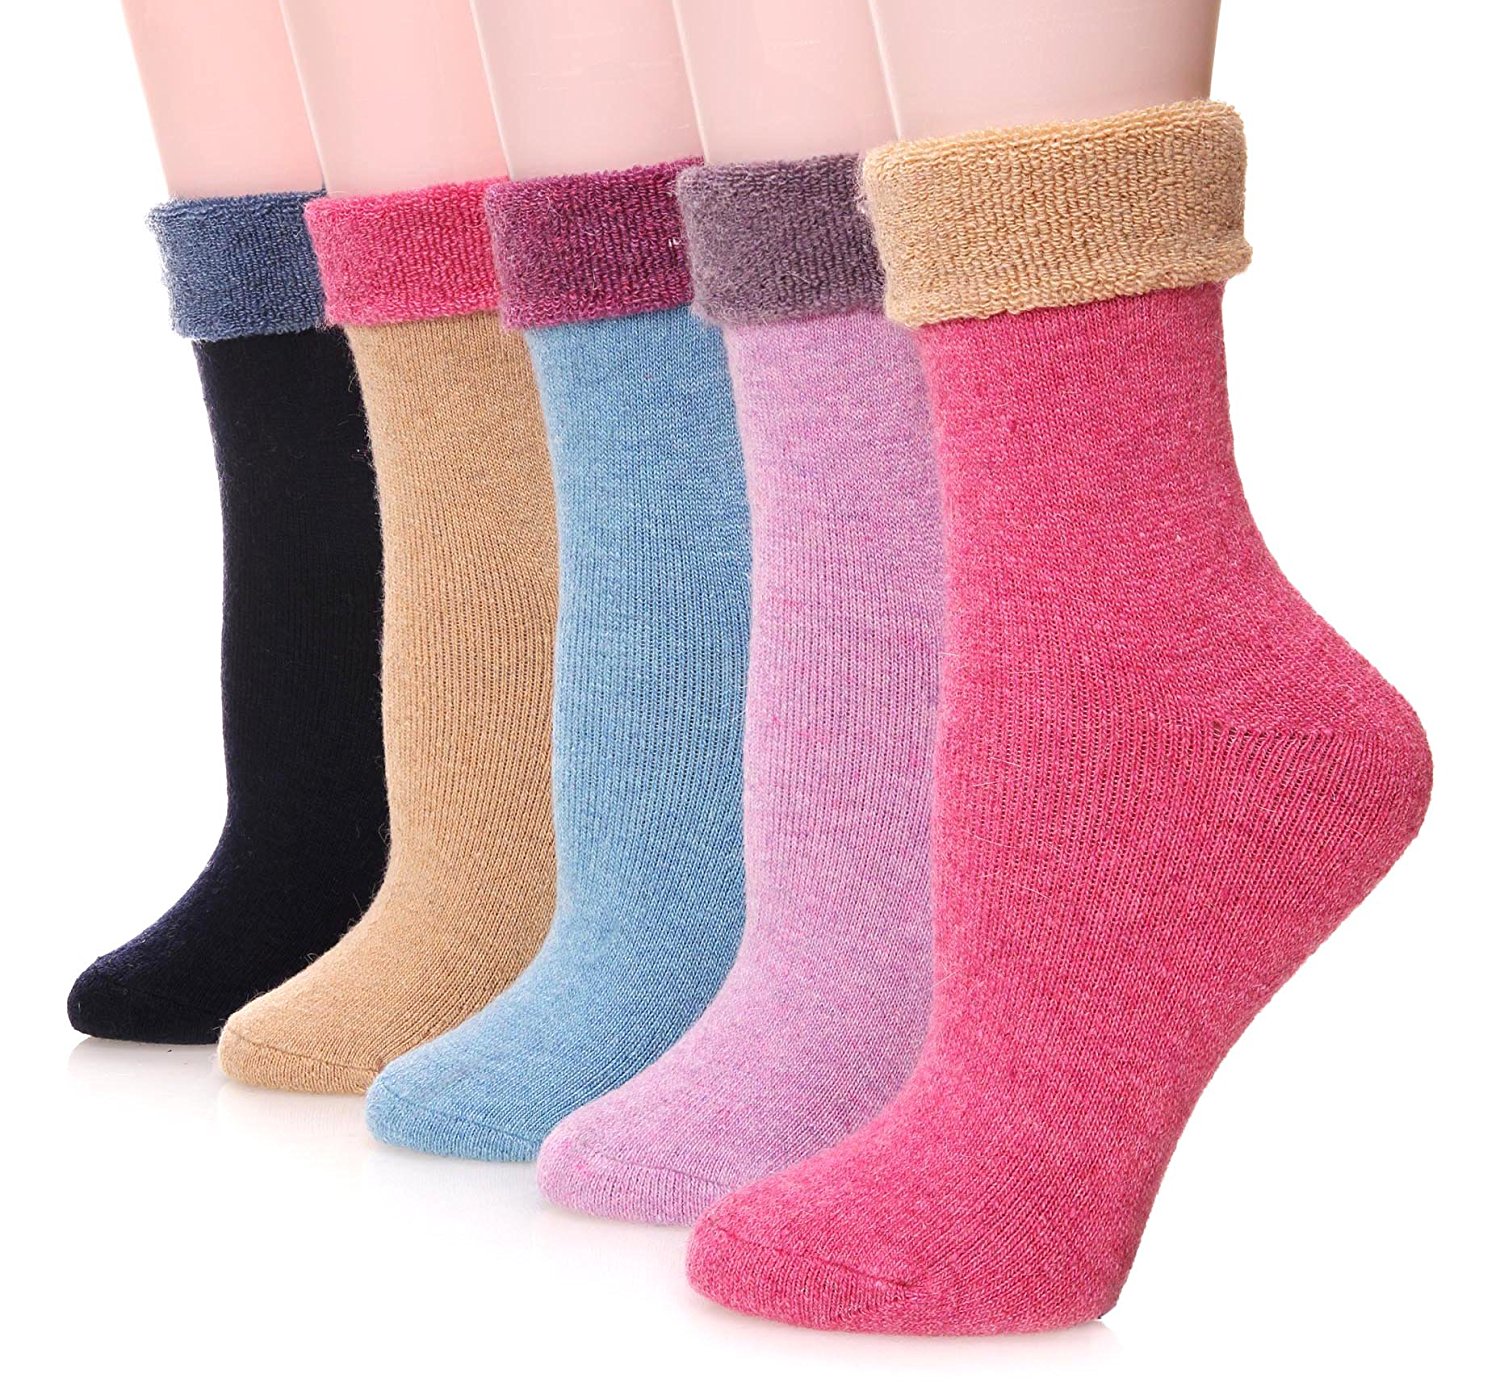 Free photo: Winter Socks - Cloth, Foot, Sock - Free Download - Jooinn